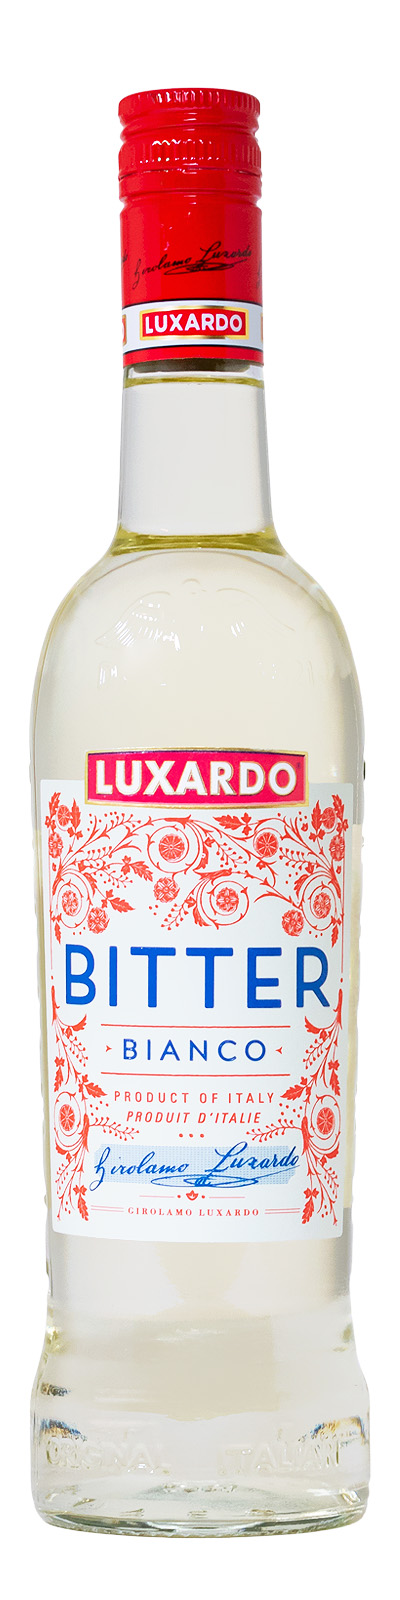 Luxardo Bitter Bianco Likör - 0,7L 30% vol